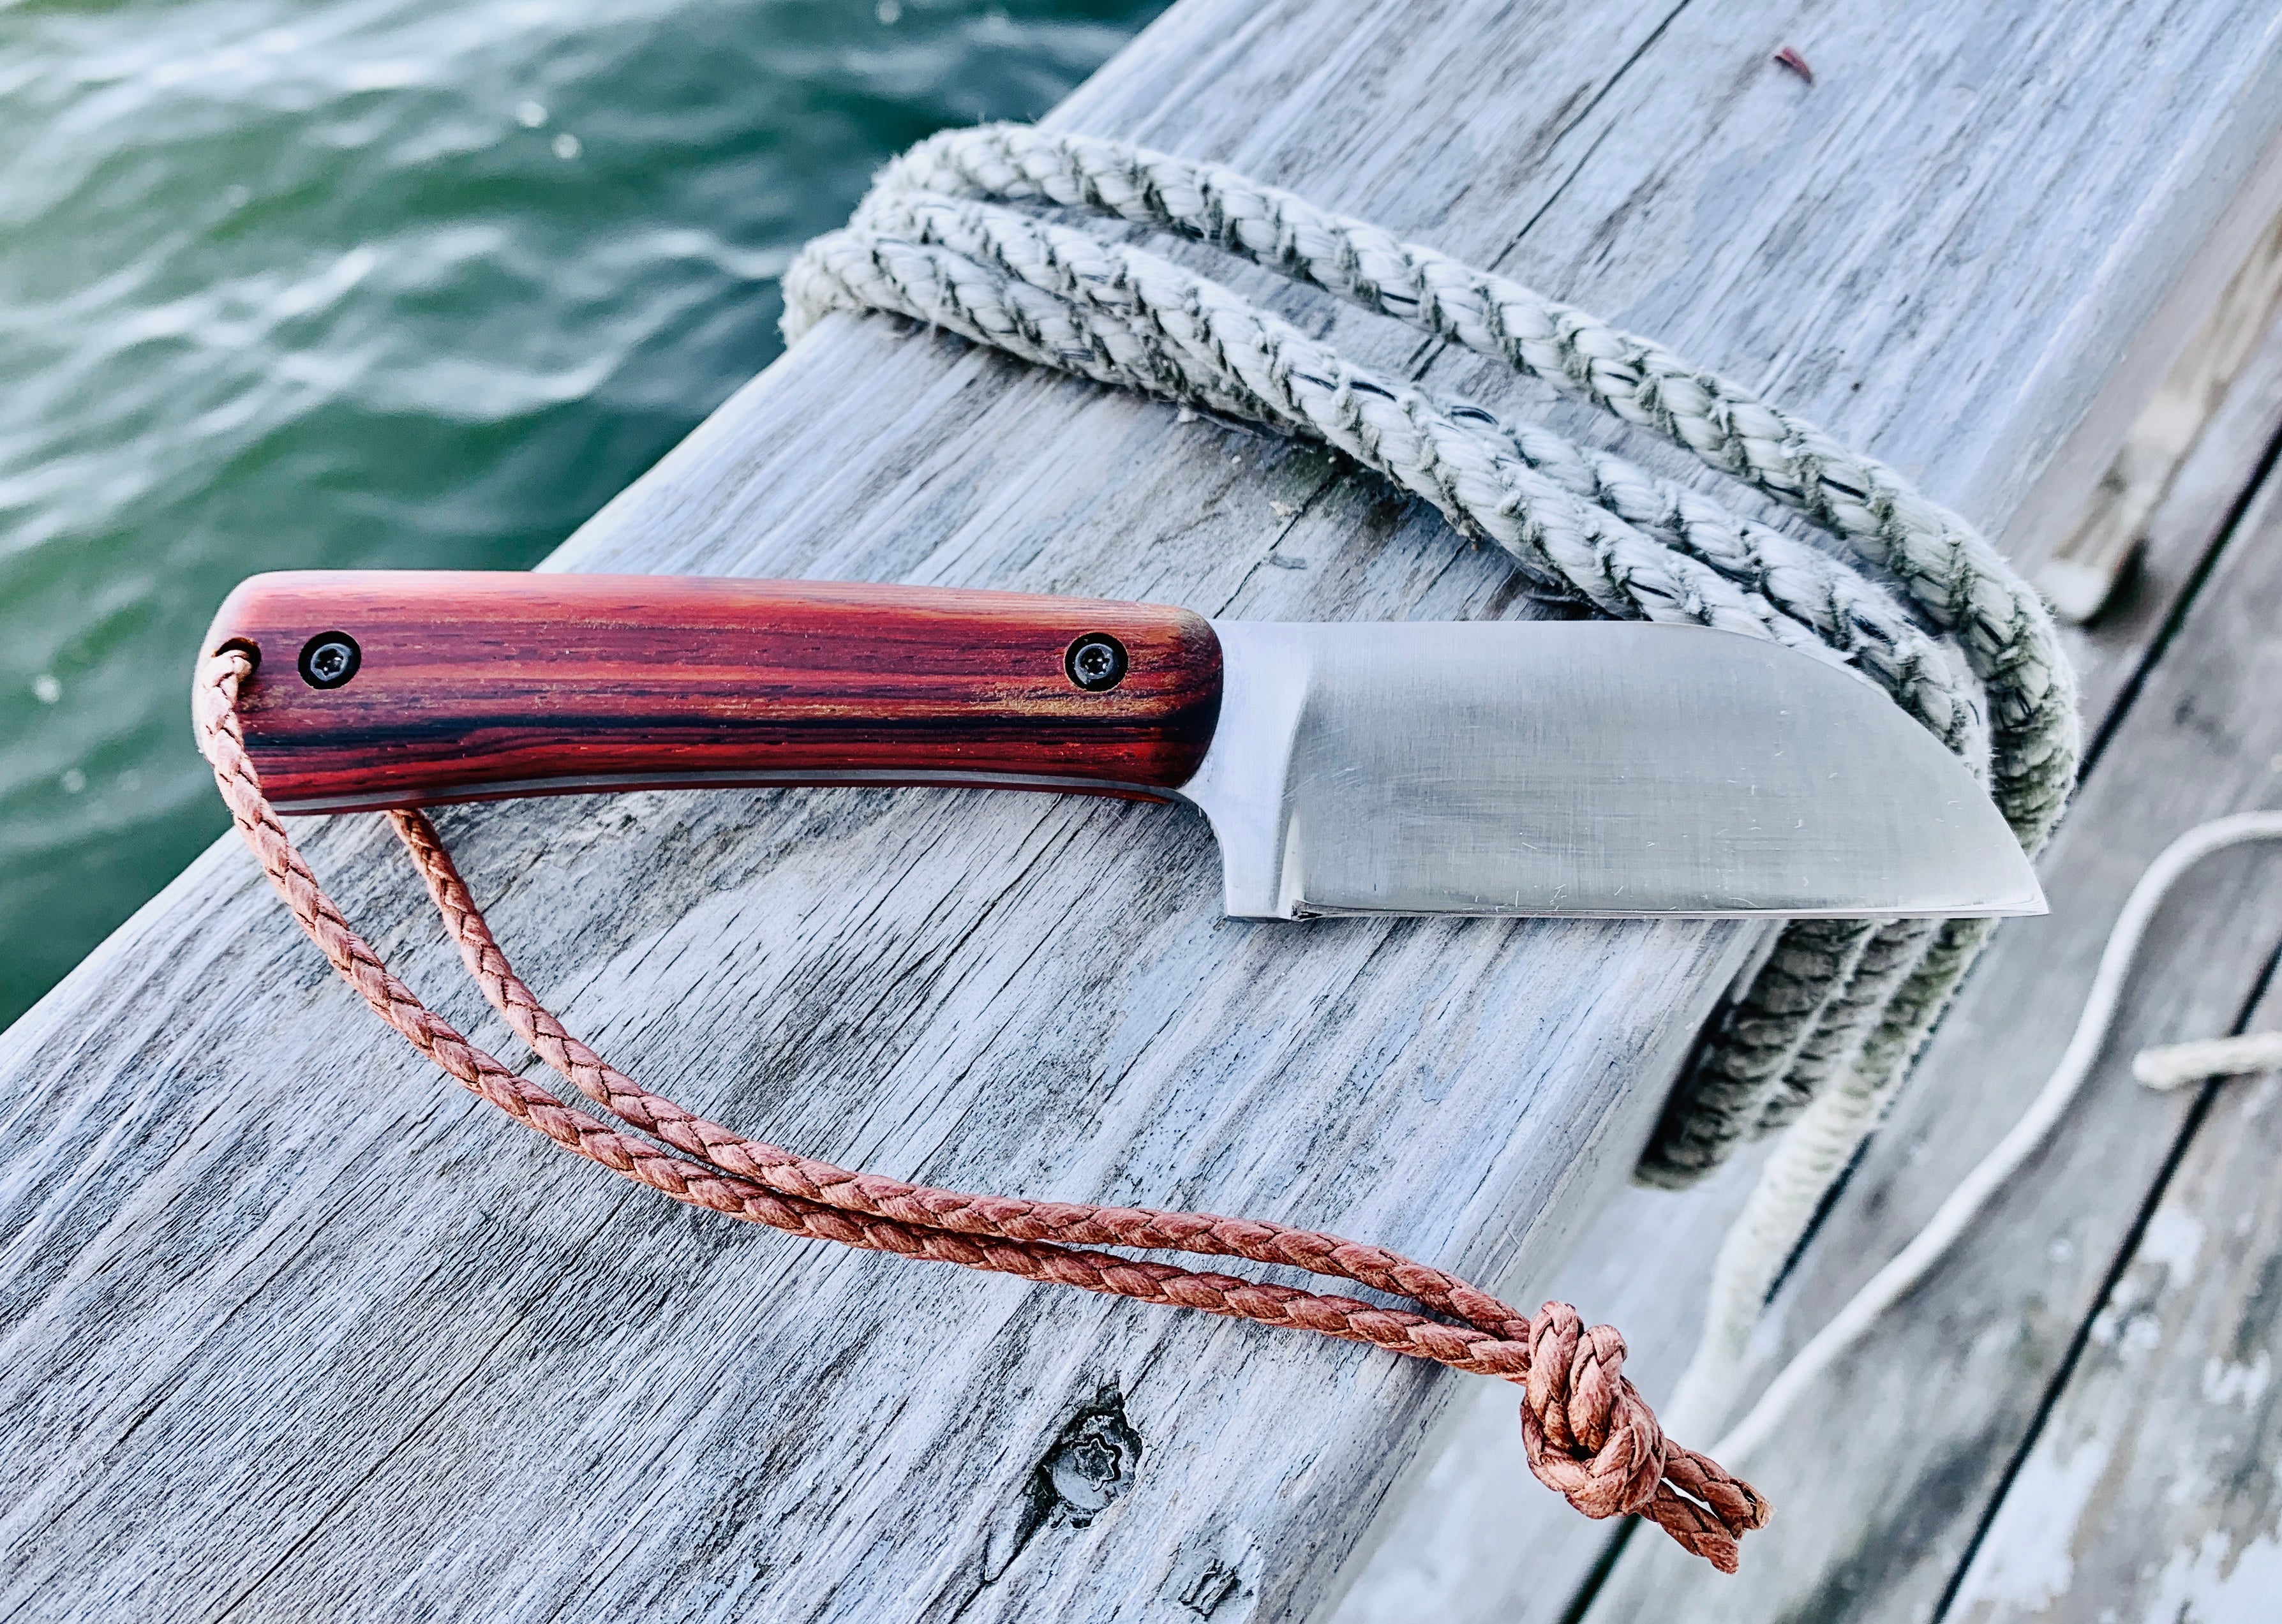 Parker River Deck Knife, Rust Proof Rigging Knife – Parker River Knife